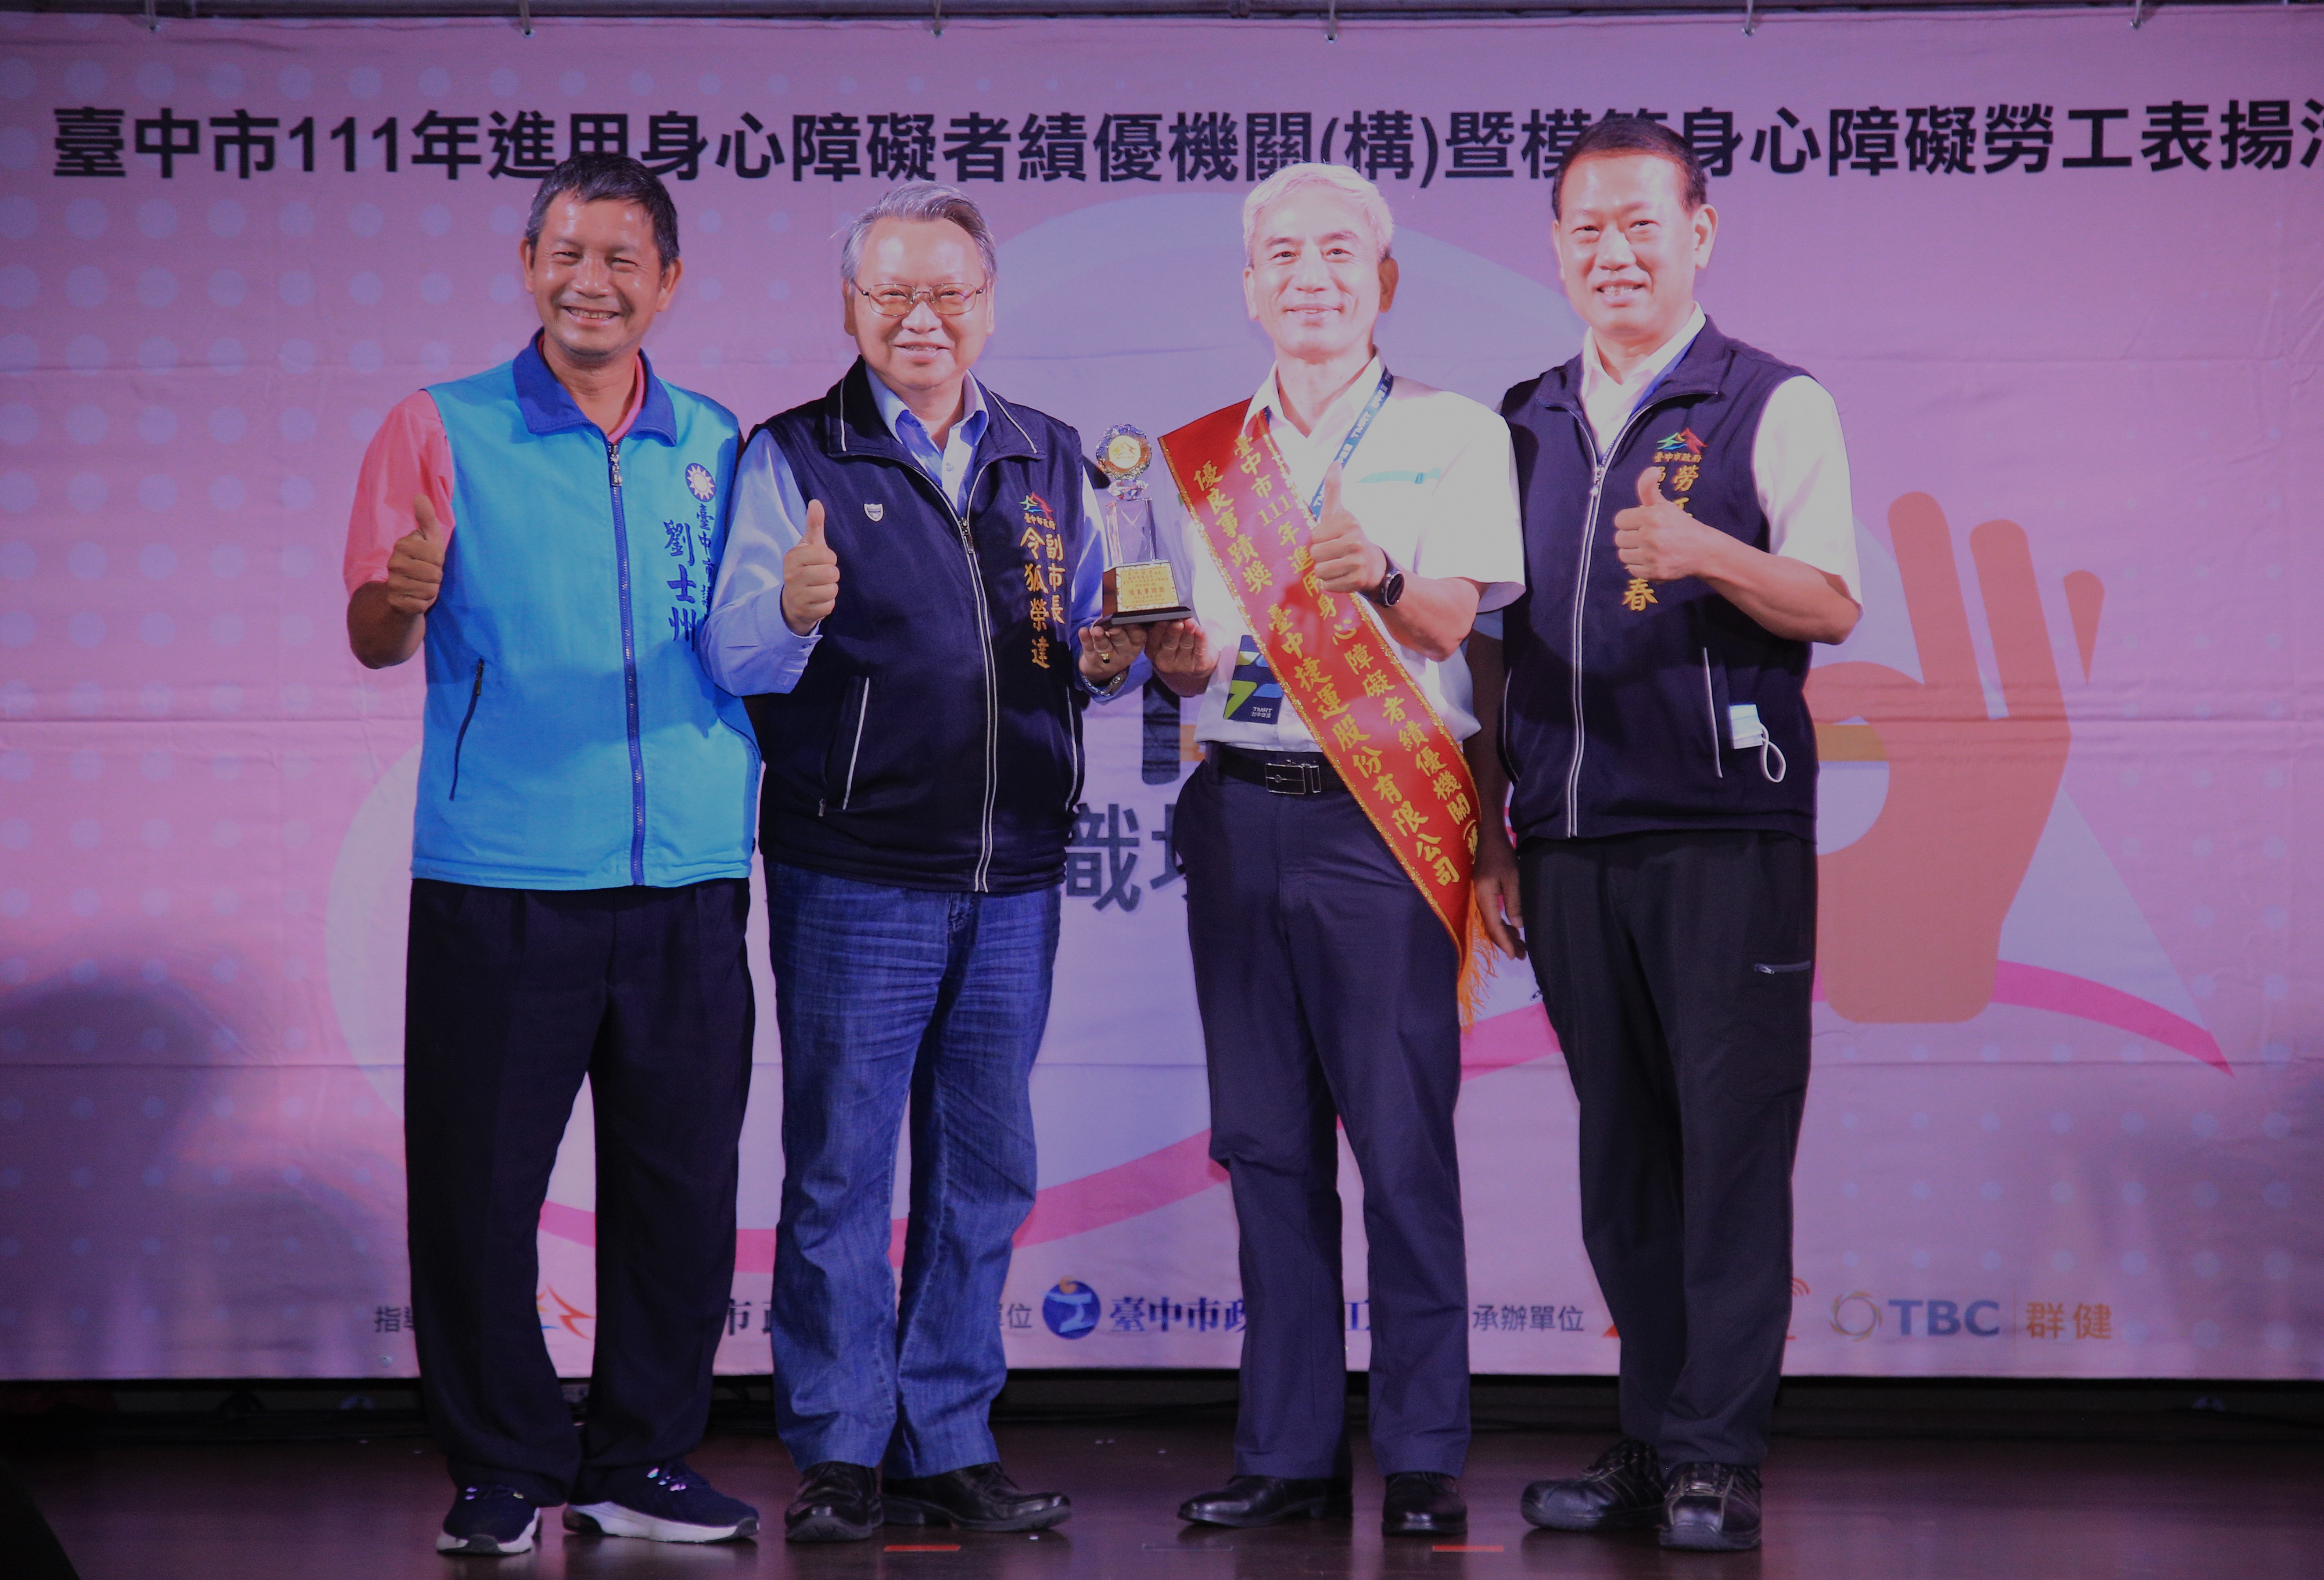 台中捷運公司獲頒進用身心障礙勞工績優機關優良事蹟獎，董事長林志盈(右2)代表受獎。